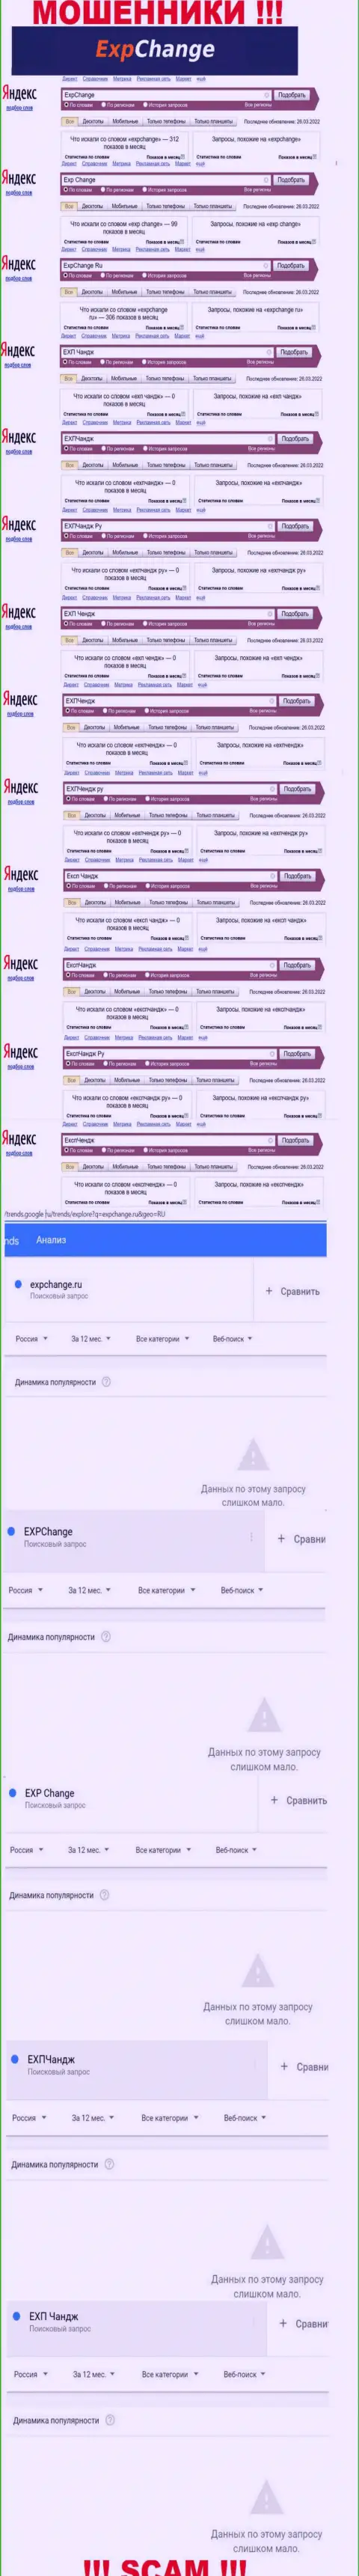 Суммарное число online-запросов посетителями сети internet информации о мошенниках ExpChange Ru